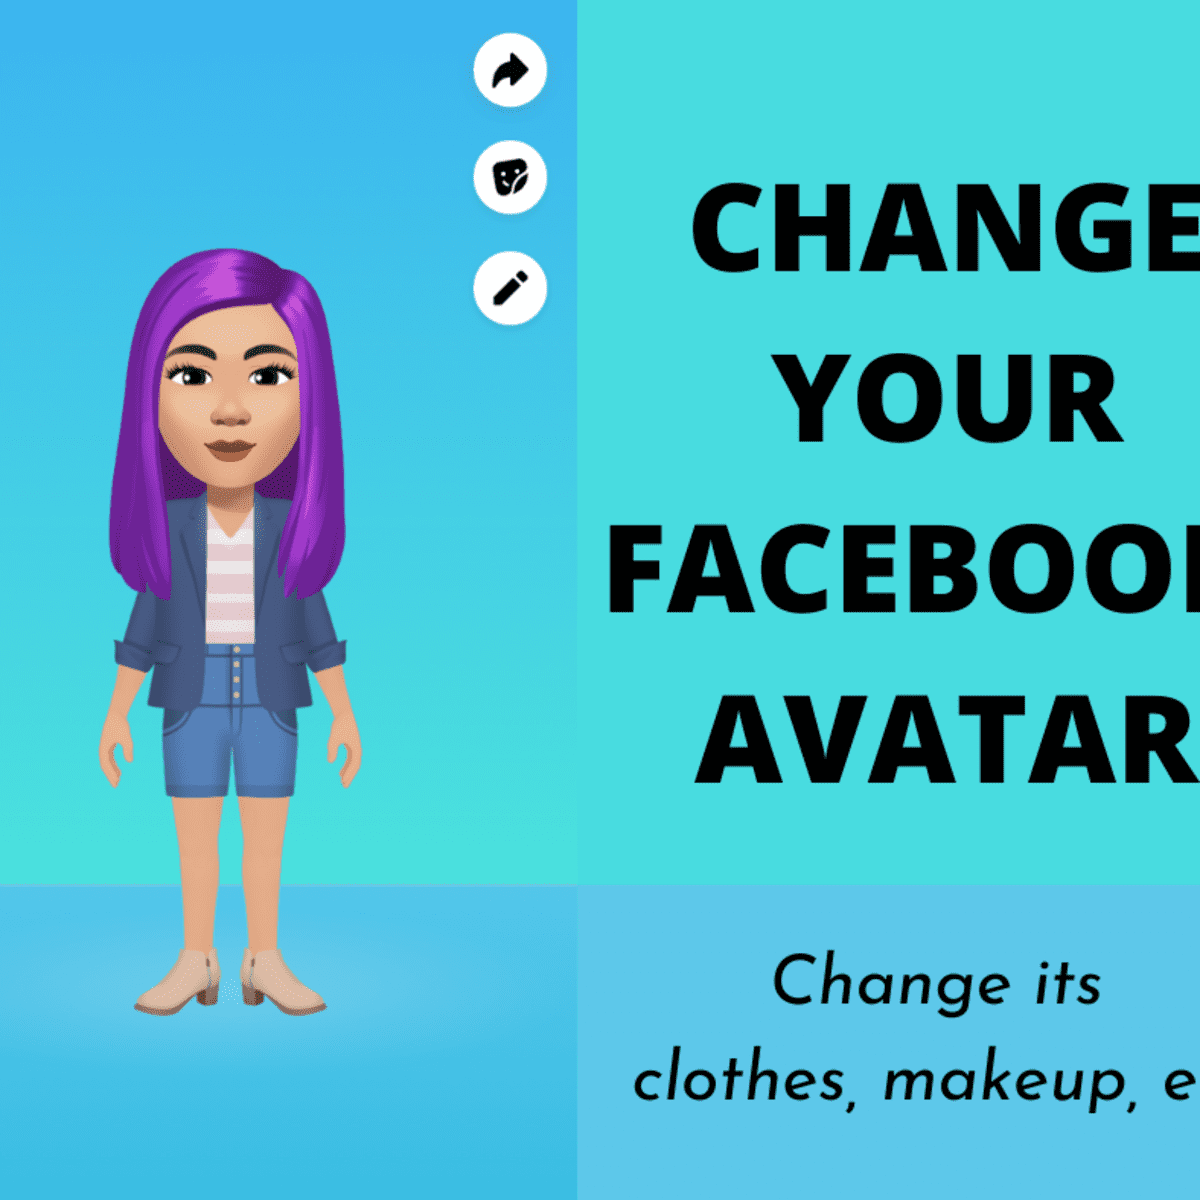 Bạn muốn tạo một Avatar Facebook độc đáo và thu hút nhiều người theo dõi? Đừng bỏ lỡ cơ hội này với những tính năng mới nhất khi tạo Avatar trên Facebook. Hãy tạo cho mình một hình ảnh đầy sáng tạo và cá tính để gây ấn tượng ngay từ cái nhìn đầu tiên!